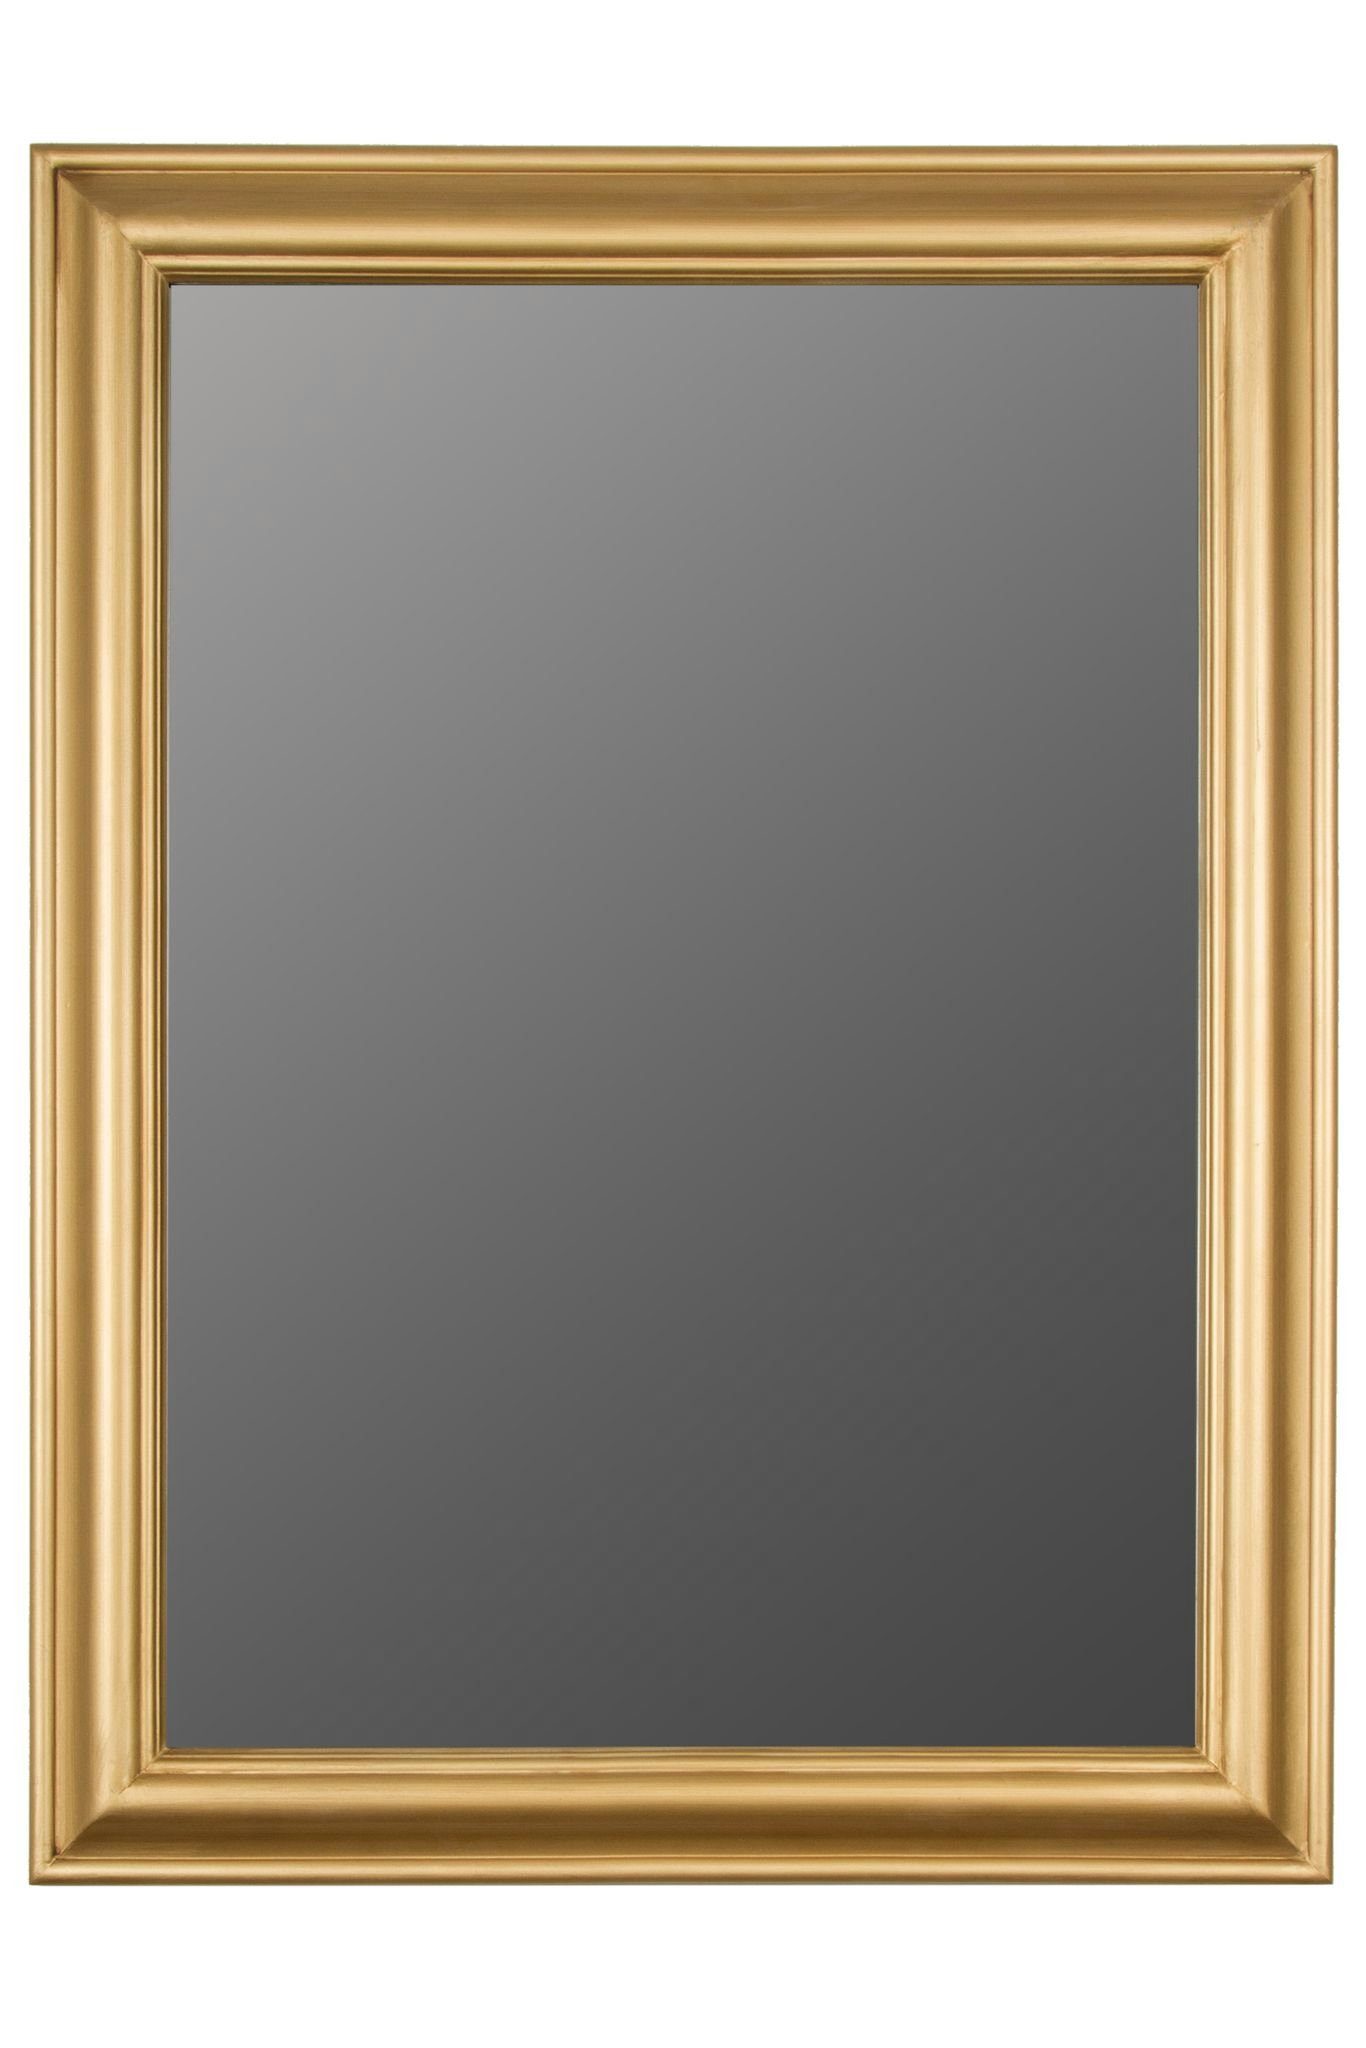 Spiegel elbmöbel gold eleganter Wandspiegel Holzrahmen 82x62x7 schlicht, antik Gold cm Landhausstil | Wandspiegel: Gold Spiegel Gold